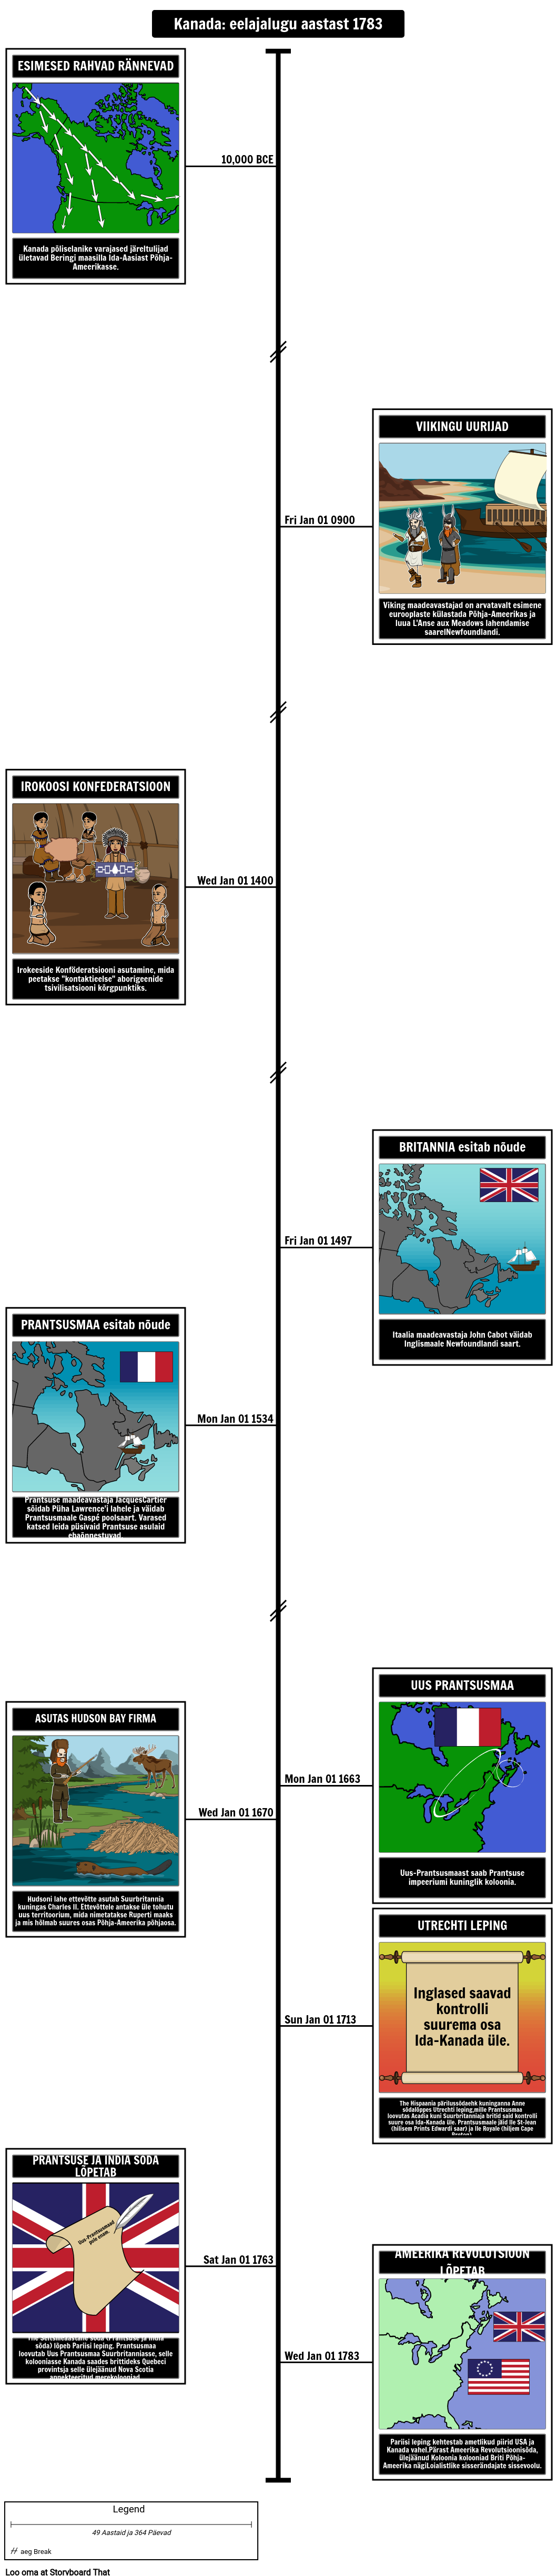 Kanada ajaloo ajaskaala eelajalugu aastani 1783